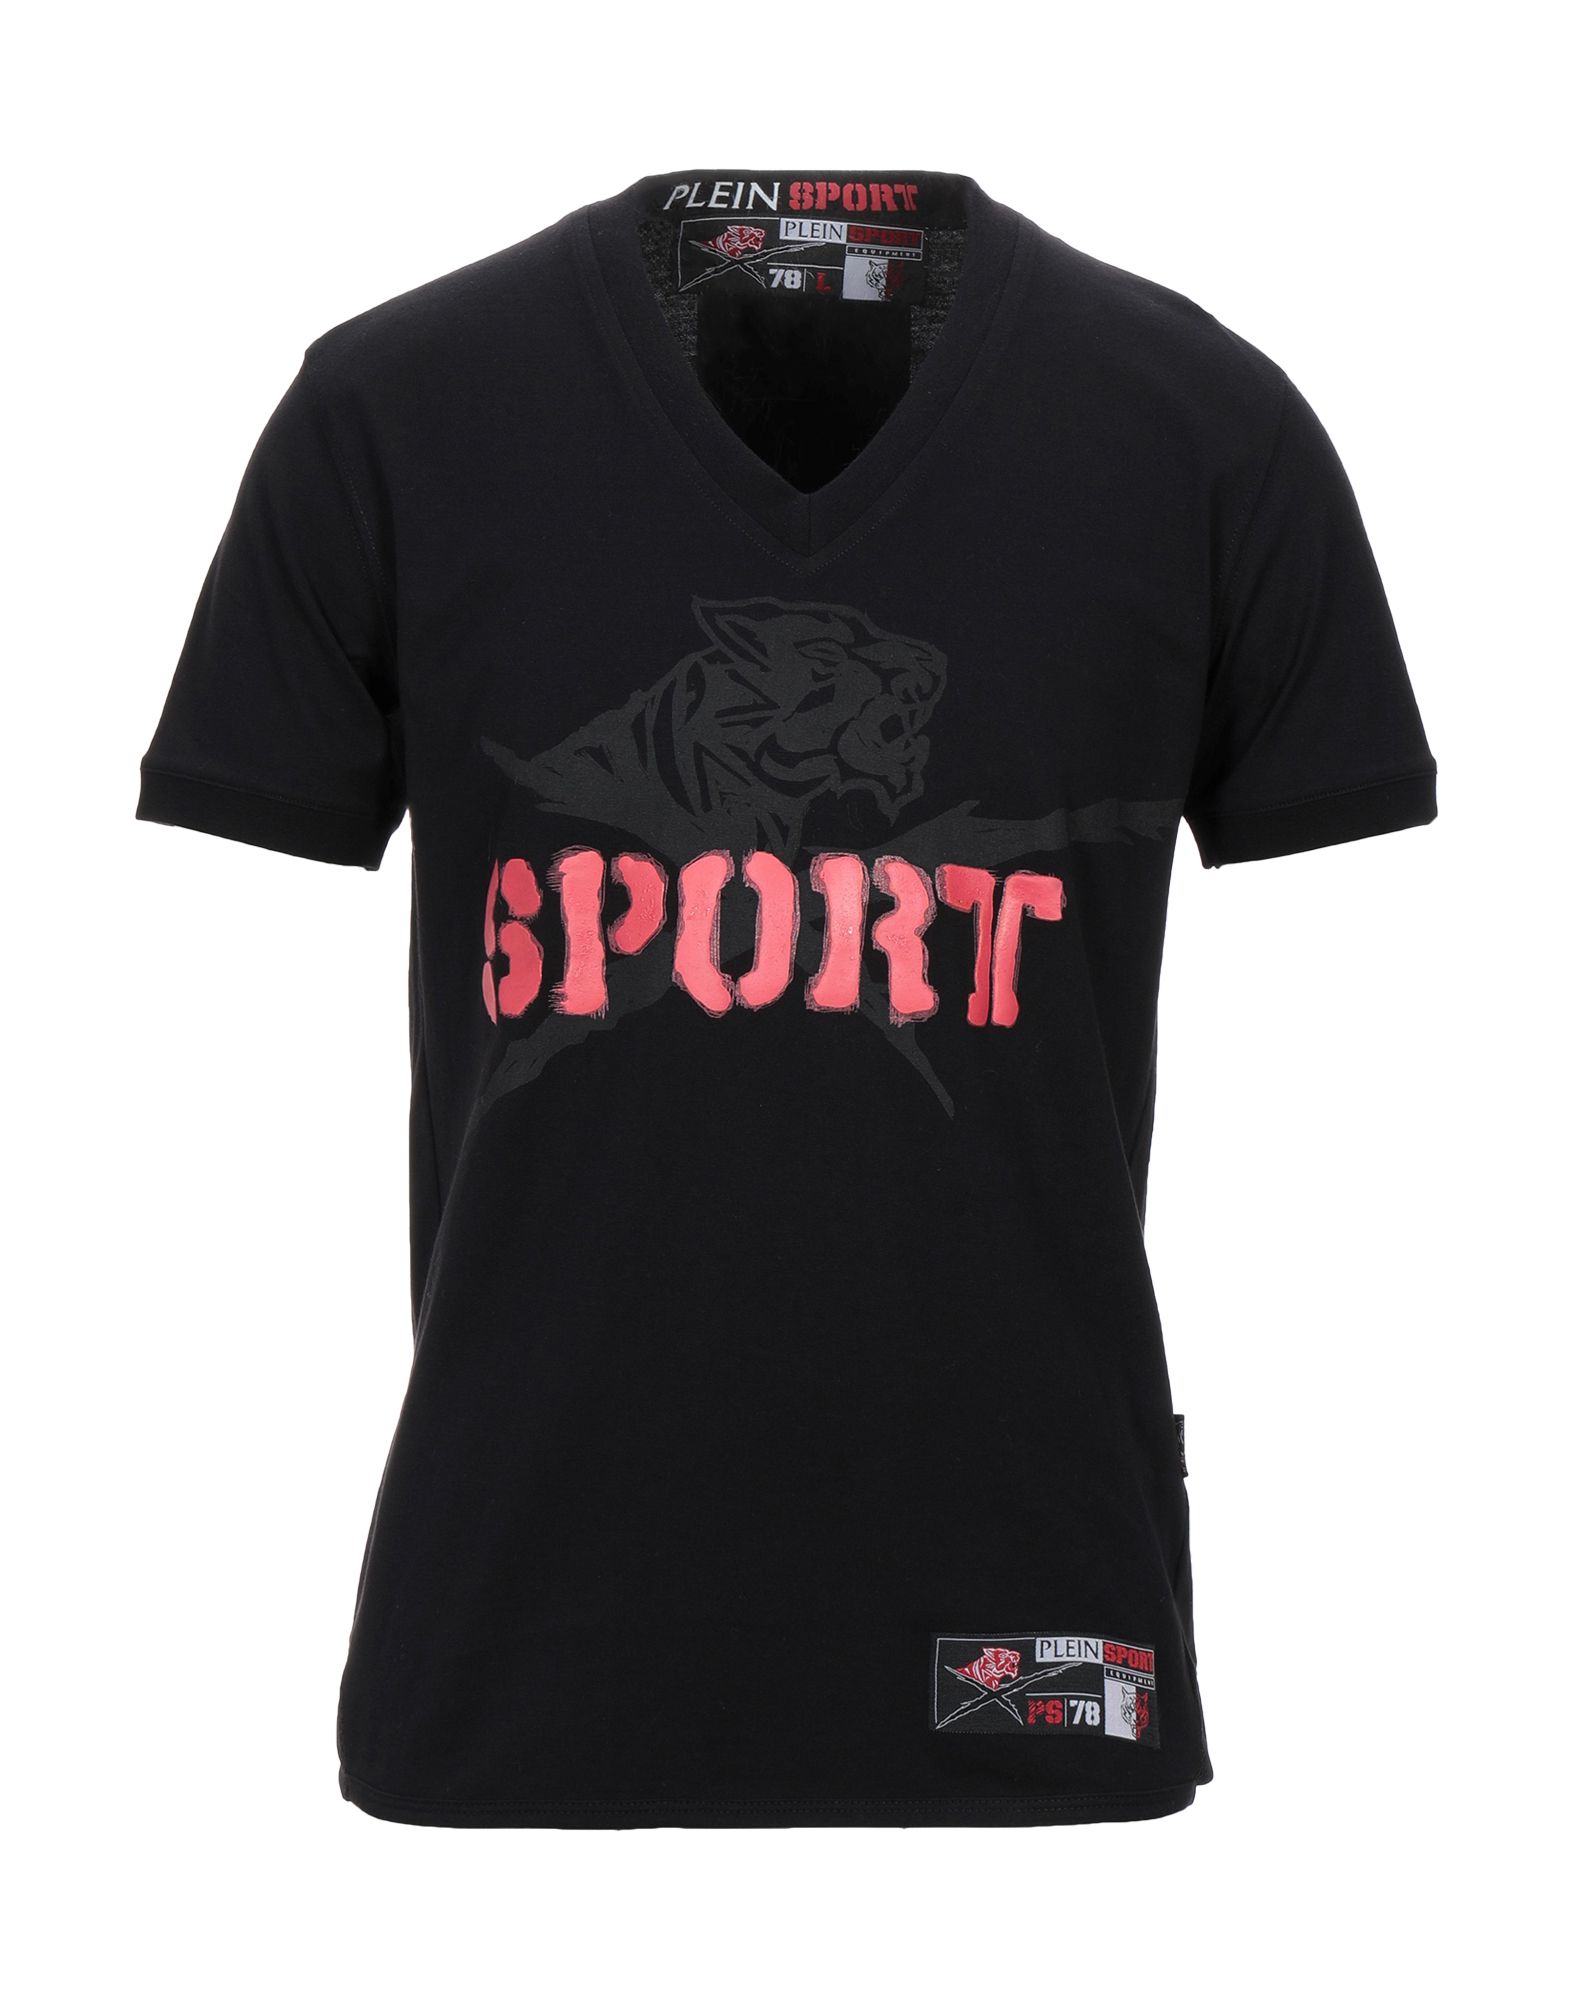 Plein sport. Plein Sport футболка. Plein Sport купить.